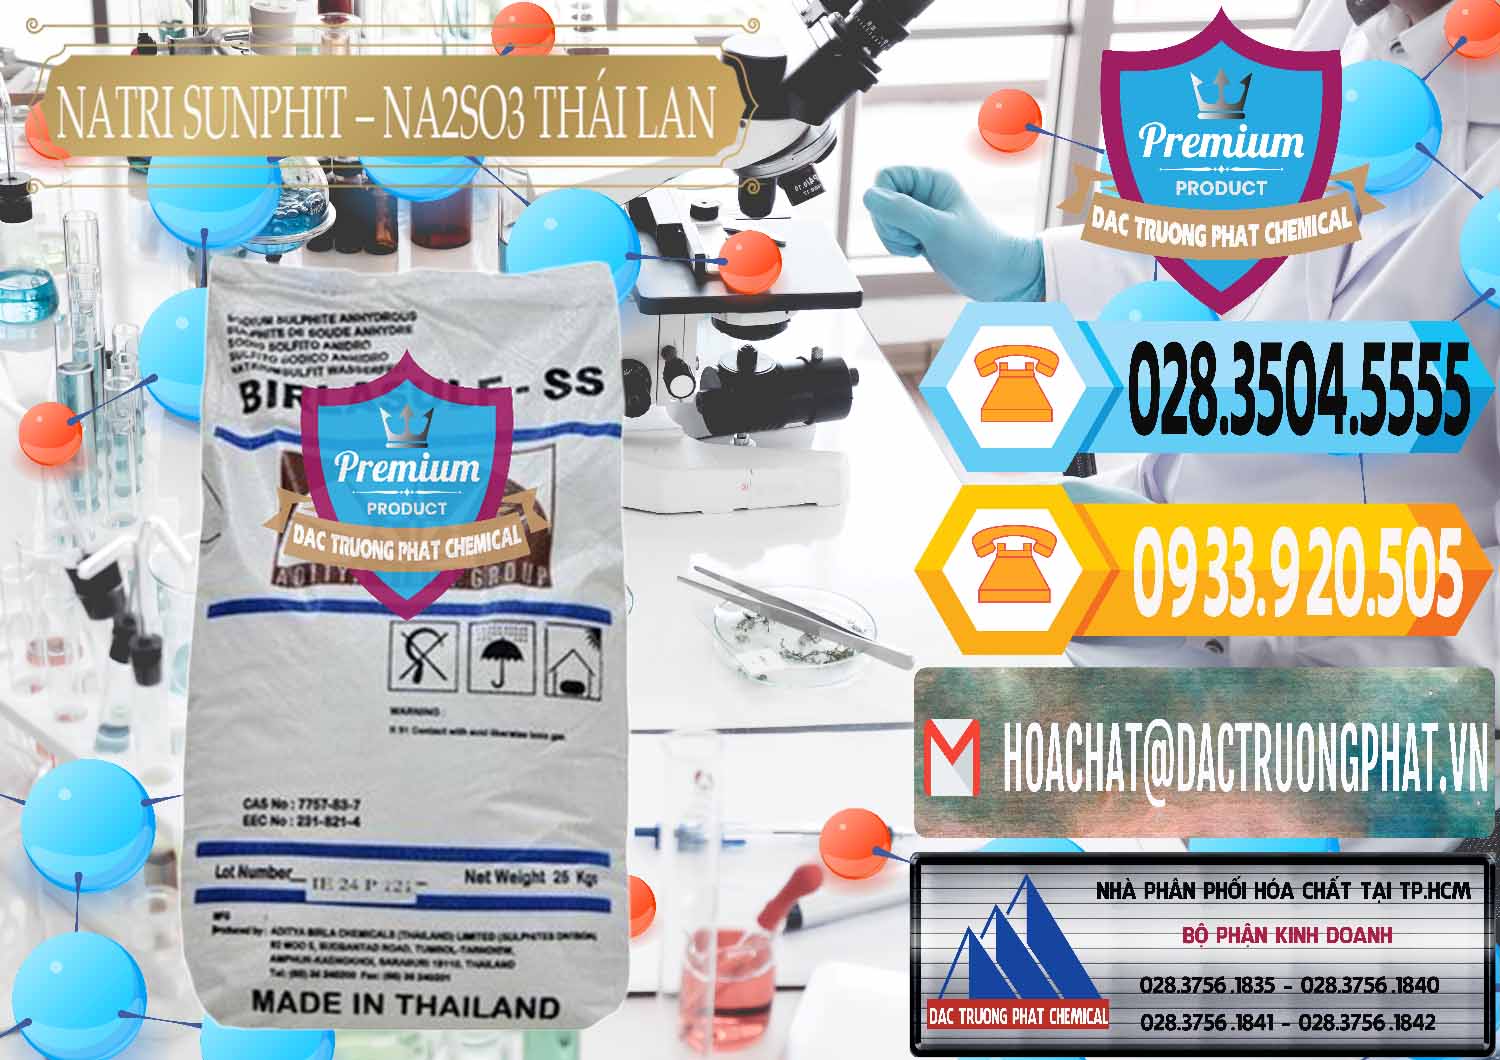 Công ty chuyên bán & cung ứng Natri Sunphit - NA2SO3 Thái Lan - 0105 - Nơi chuyên kinh doanh _ cung cấp hóa chất tại TP.HCM - hoachattayrua.net